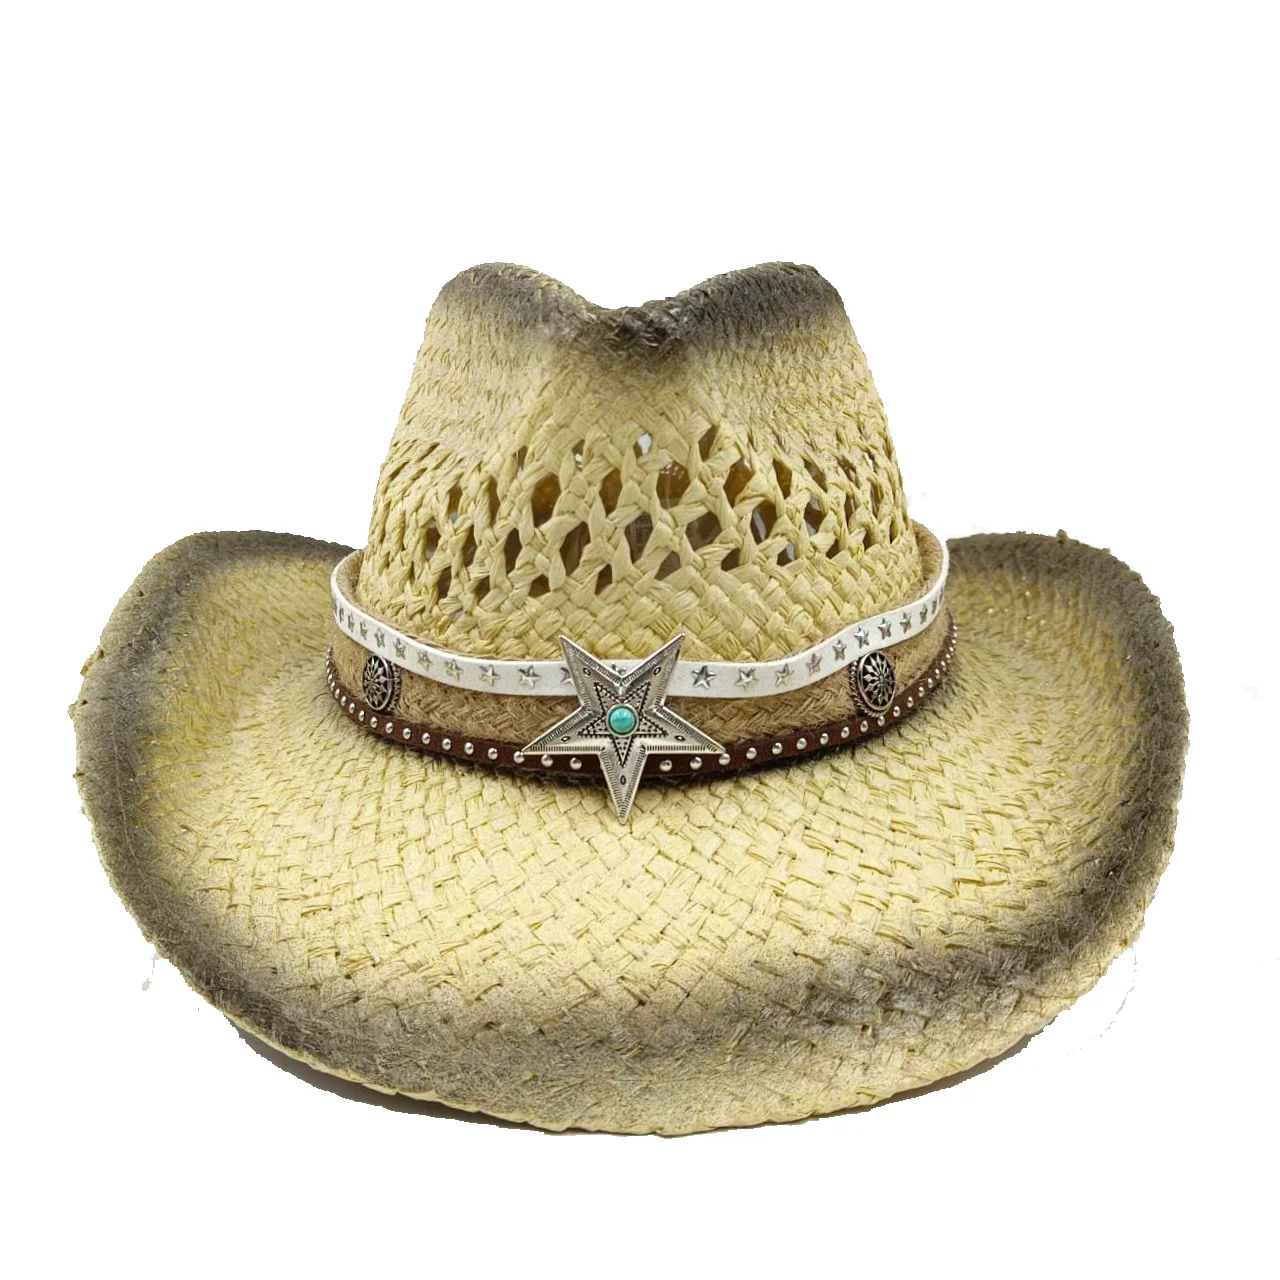  - Painted Cowboy Straw Hat pentagram Accessories Men's Summer Outdoor Travel Beach Hat Unisex Western Cowboy Hat